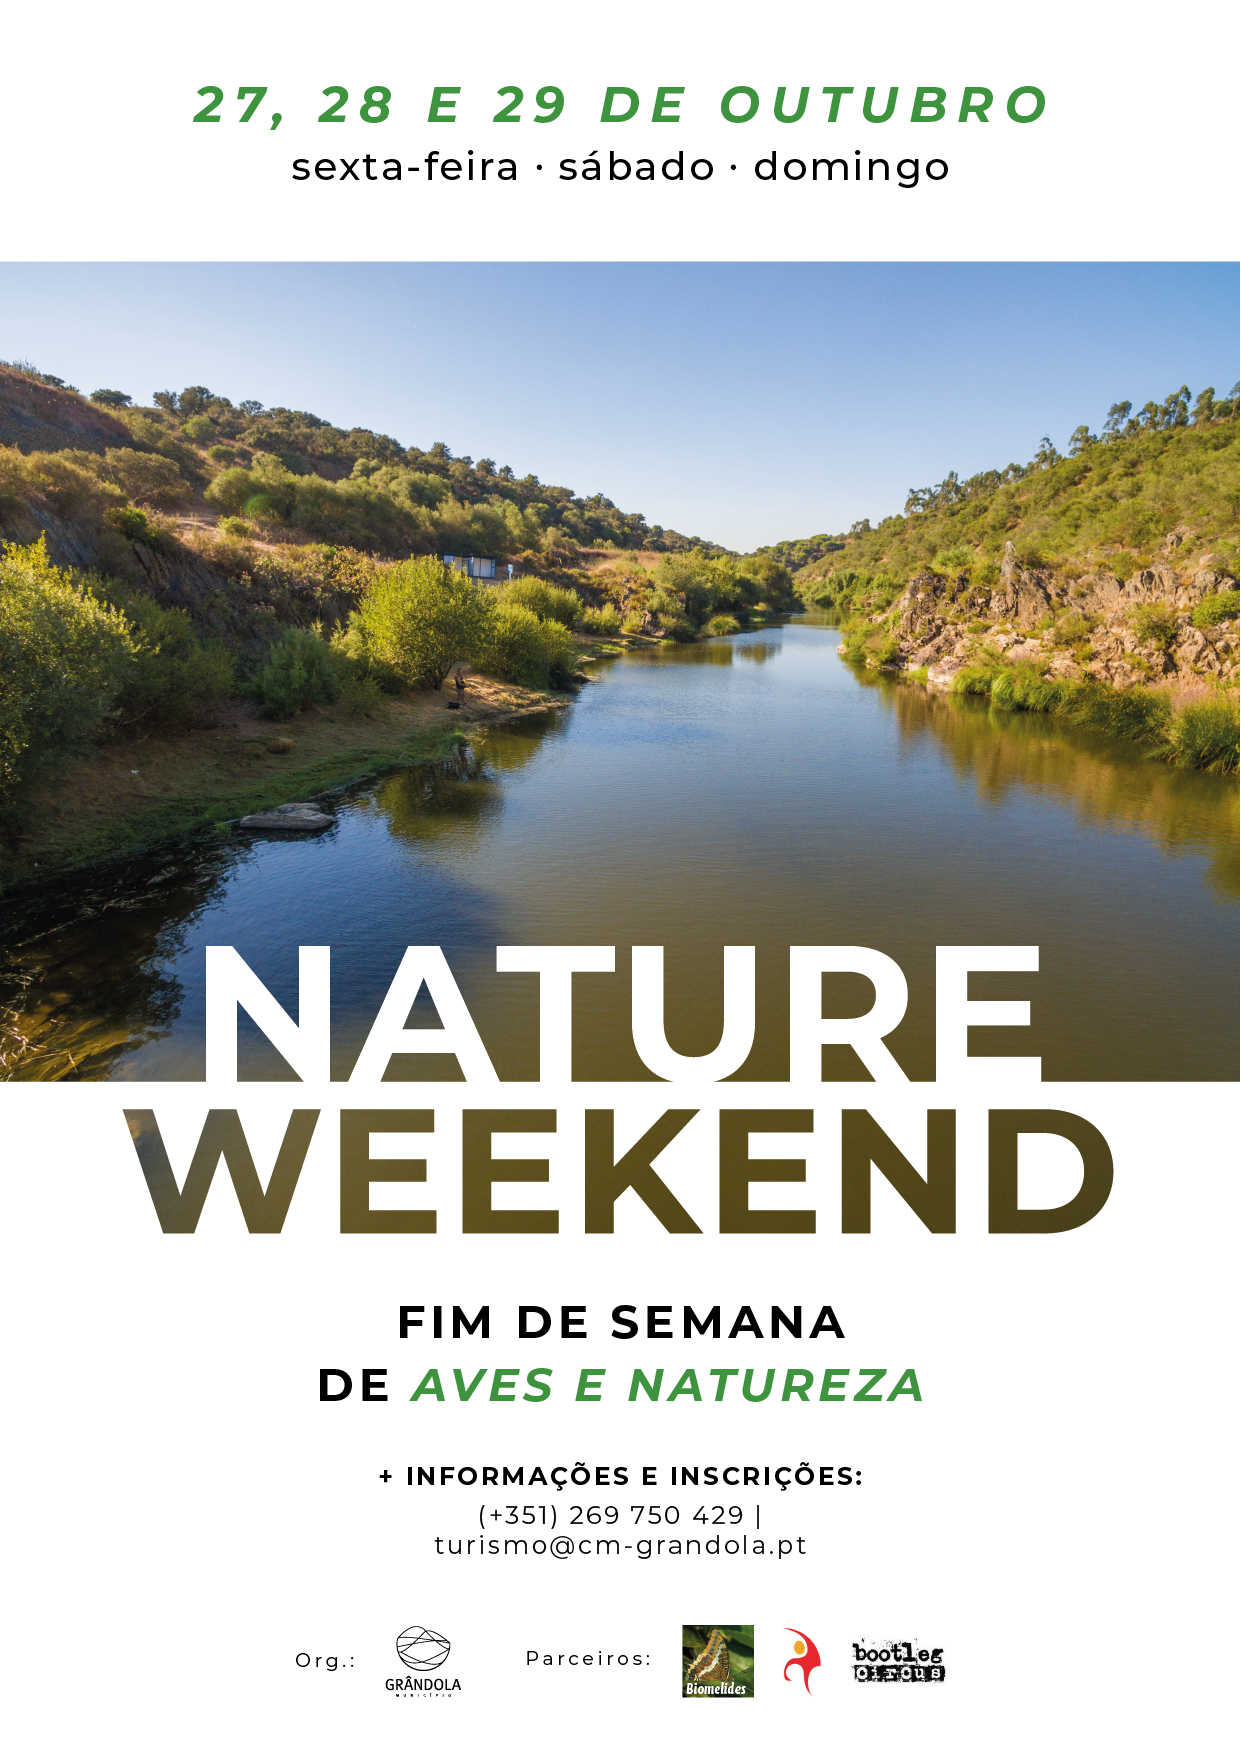 TURISMO | Nature Weekend - Fim de Semana de Aves e Natureza